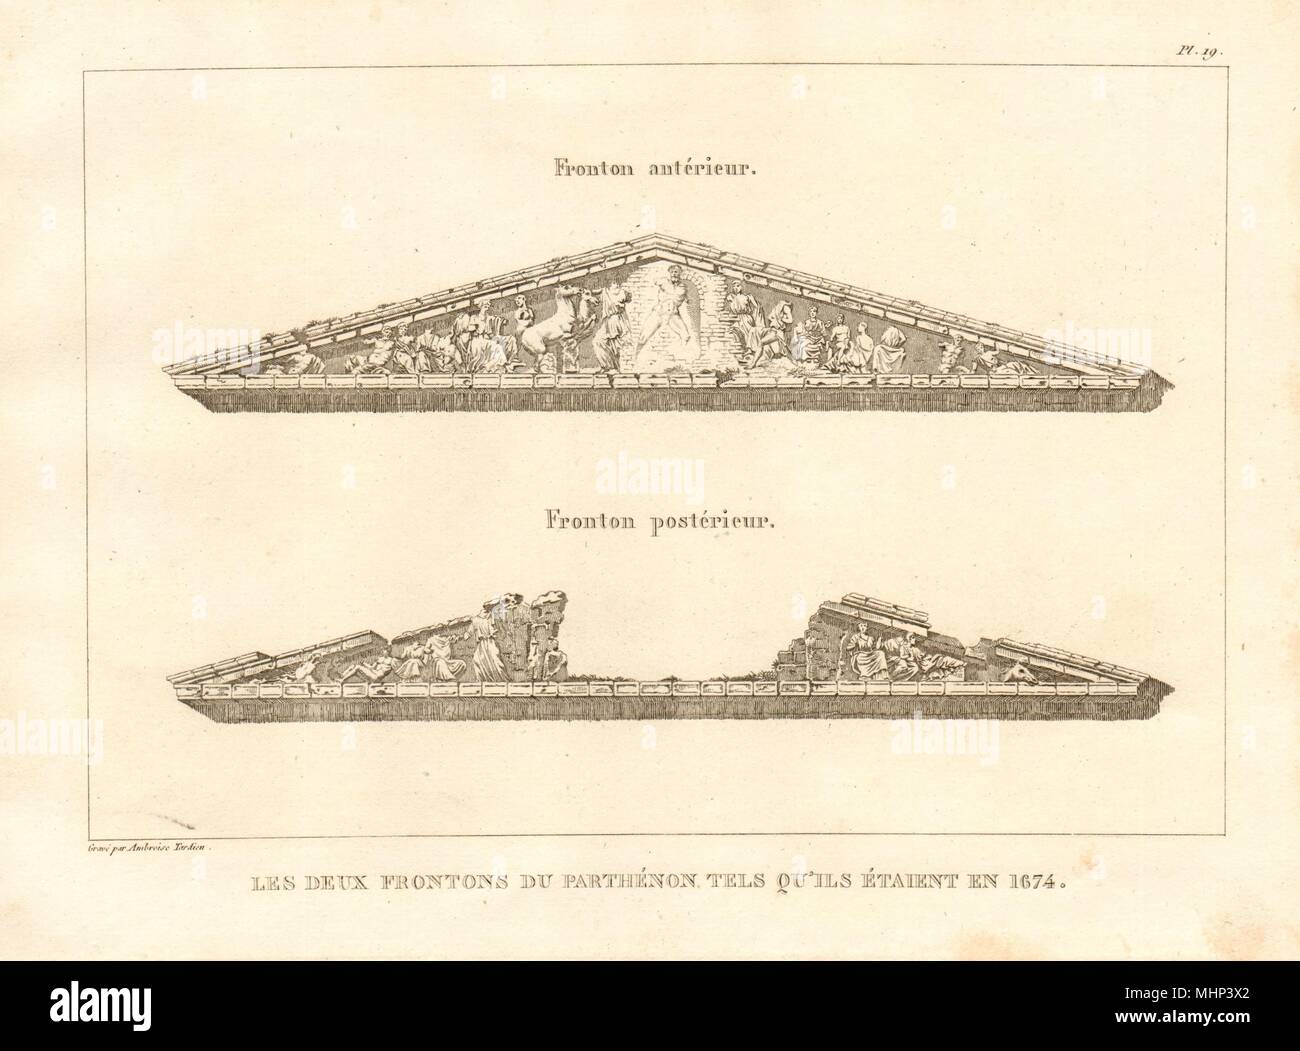 Atene. PARTHENON frontoni. 'Les deux frontons…' come erano nel 1674 1832 Foto Stock